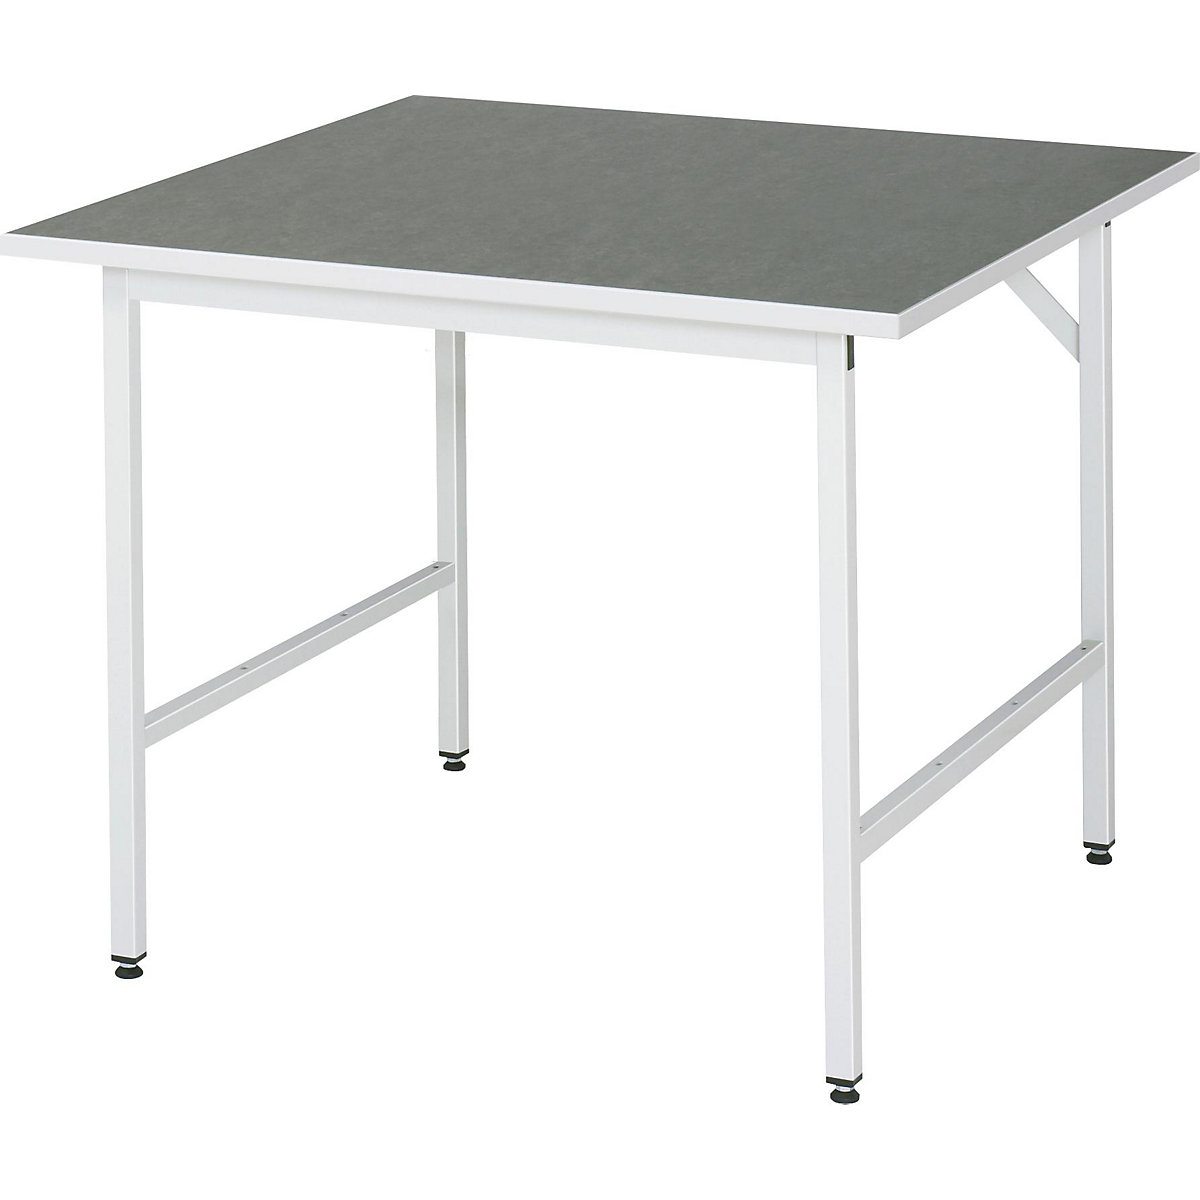 Munkaasztal, állítható magasságú – RAU, 800 – 850 mm, linóleum lap, szé x mé 1000 x 1000 mm, világosszürke-13